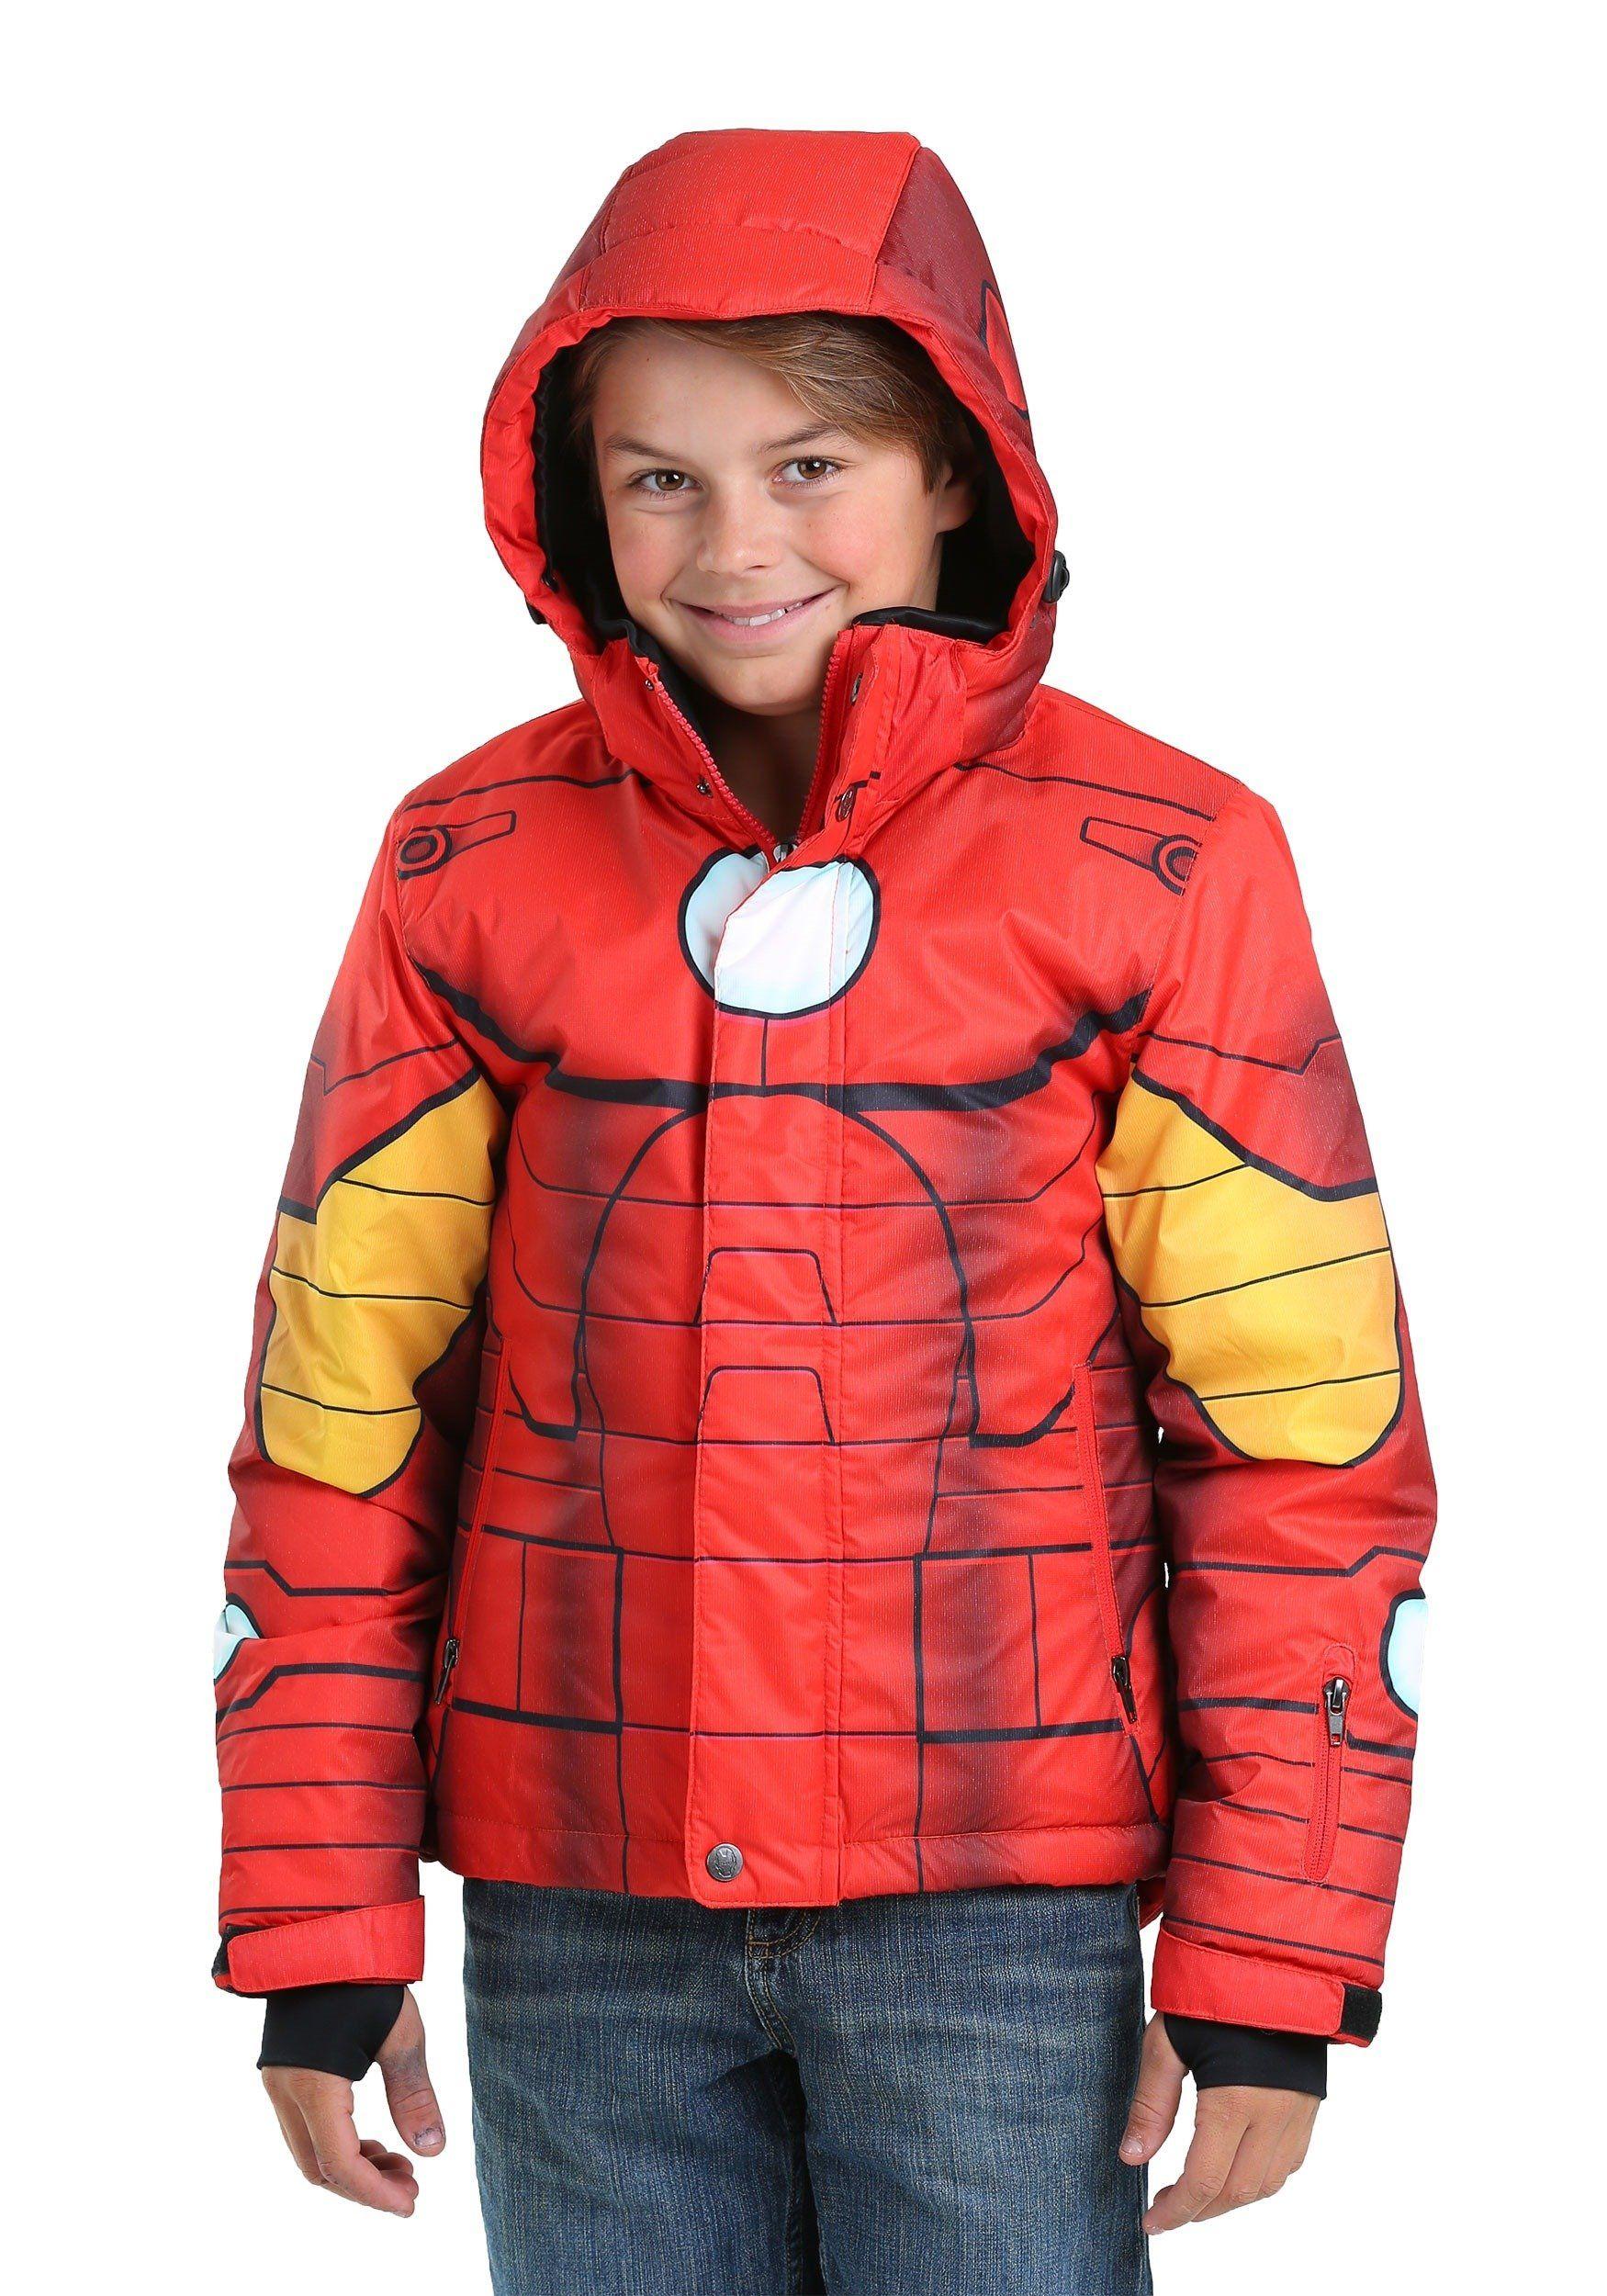 Man in Red Jacket Logo - Kids Iron Man Snow Jacket Red, Gold: Clothing